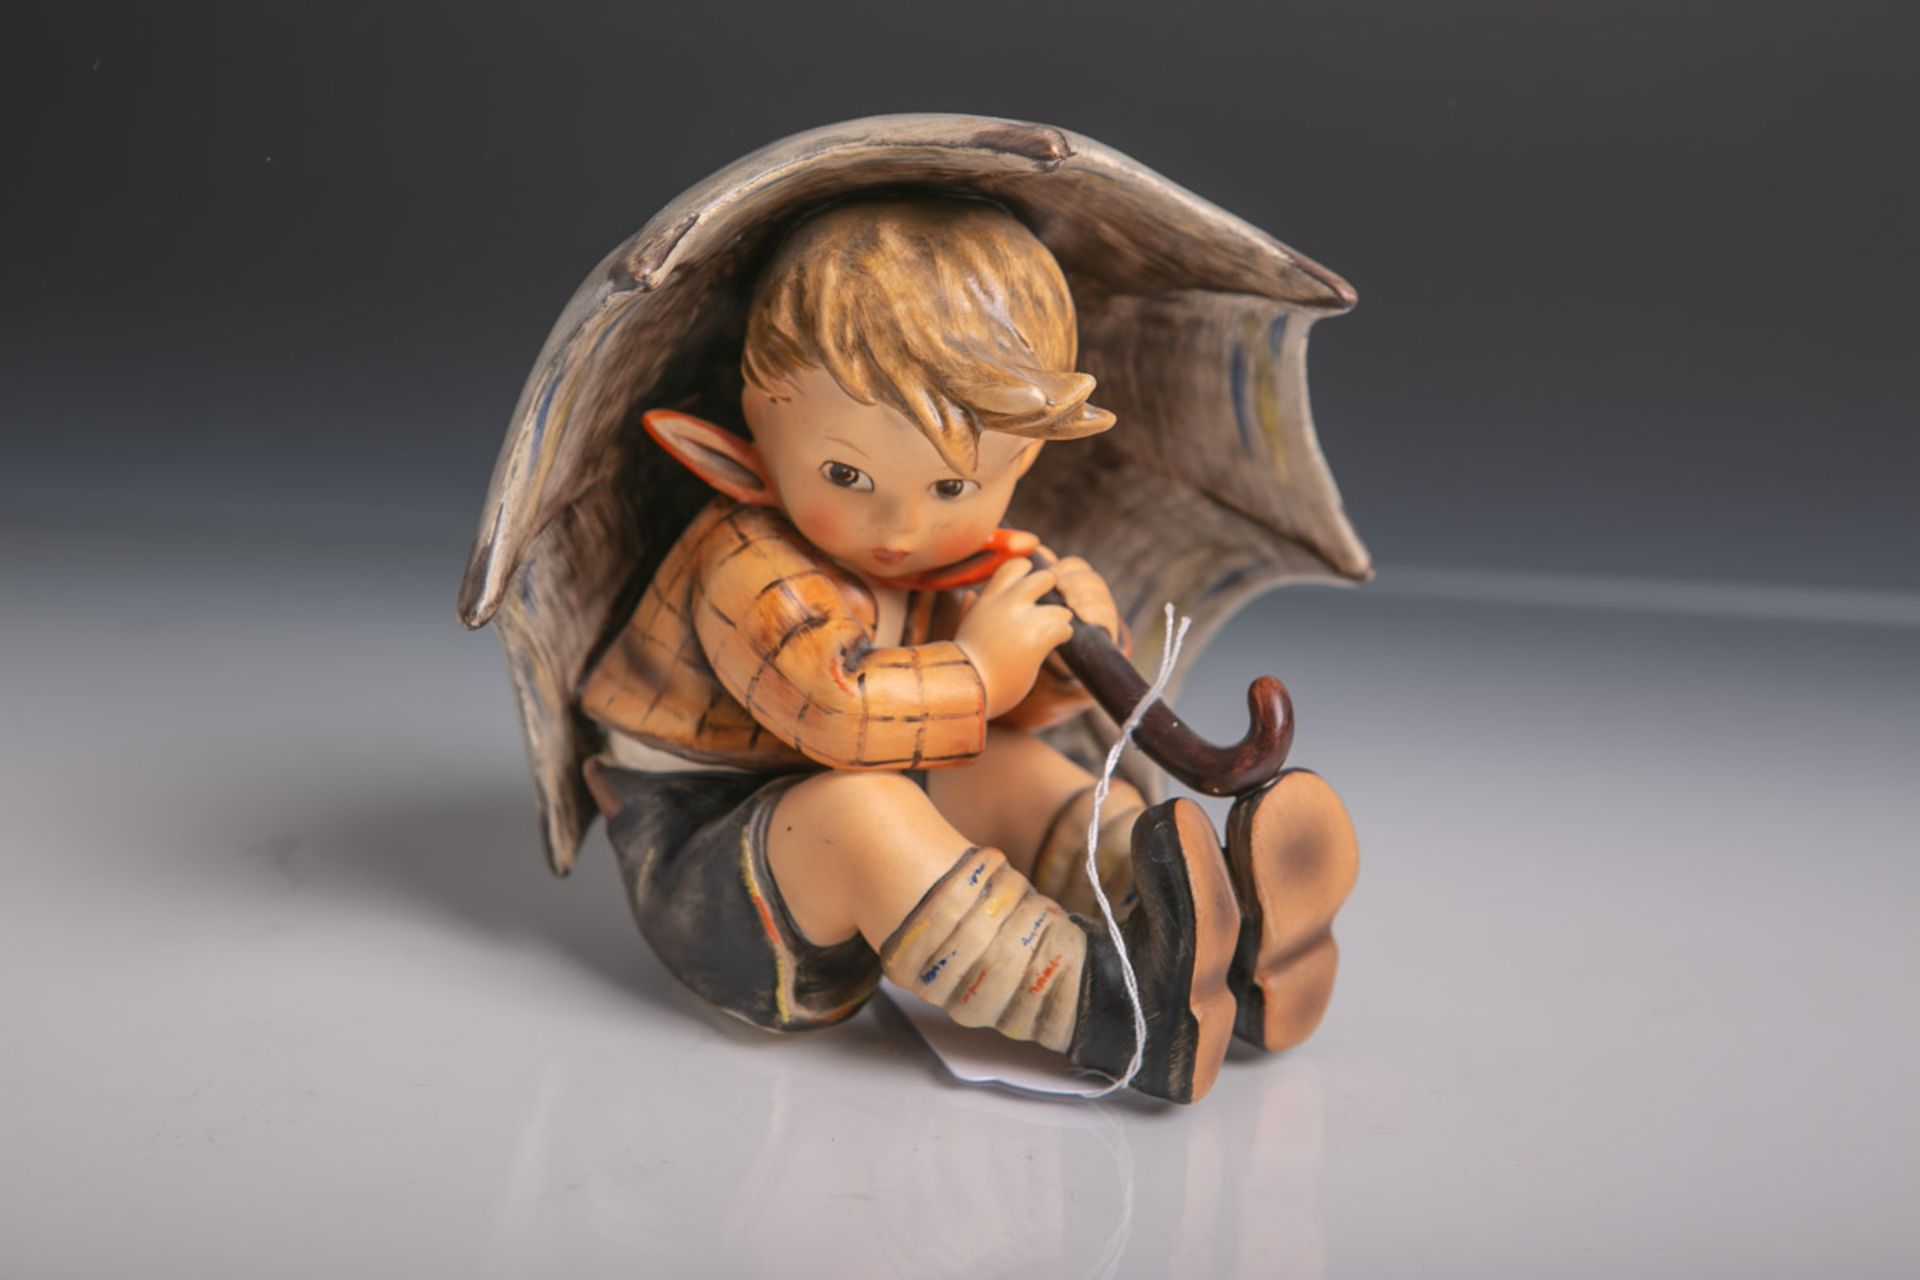 Knabenfigur unter einem großen Schirm sitzend (Hummel) aus Keramik/Porzellan von Goebel